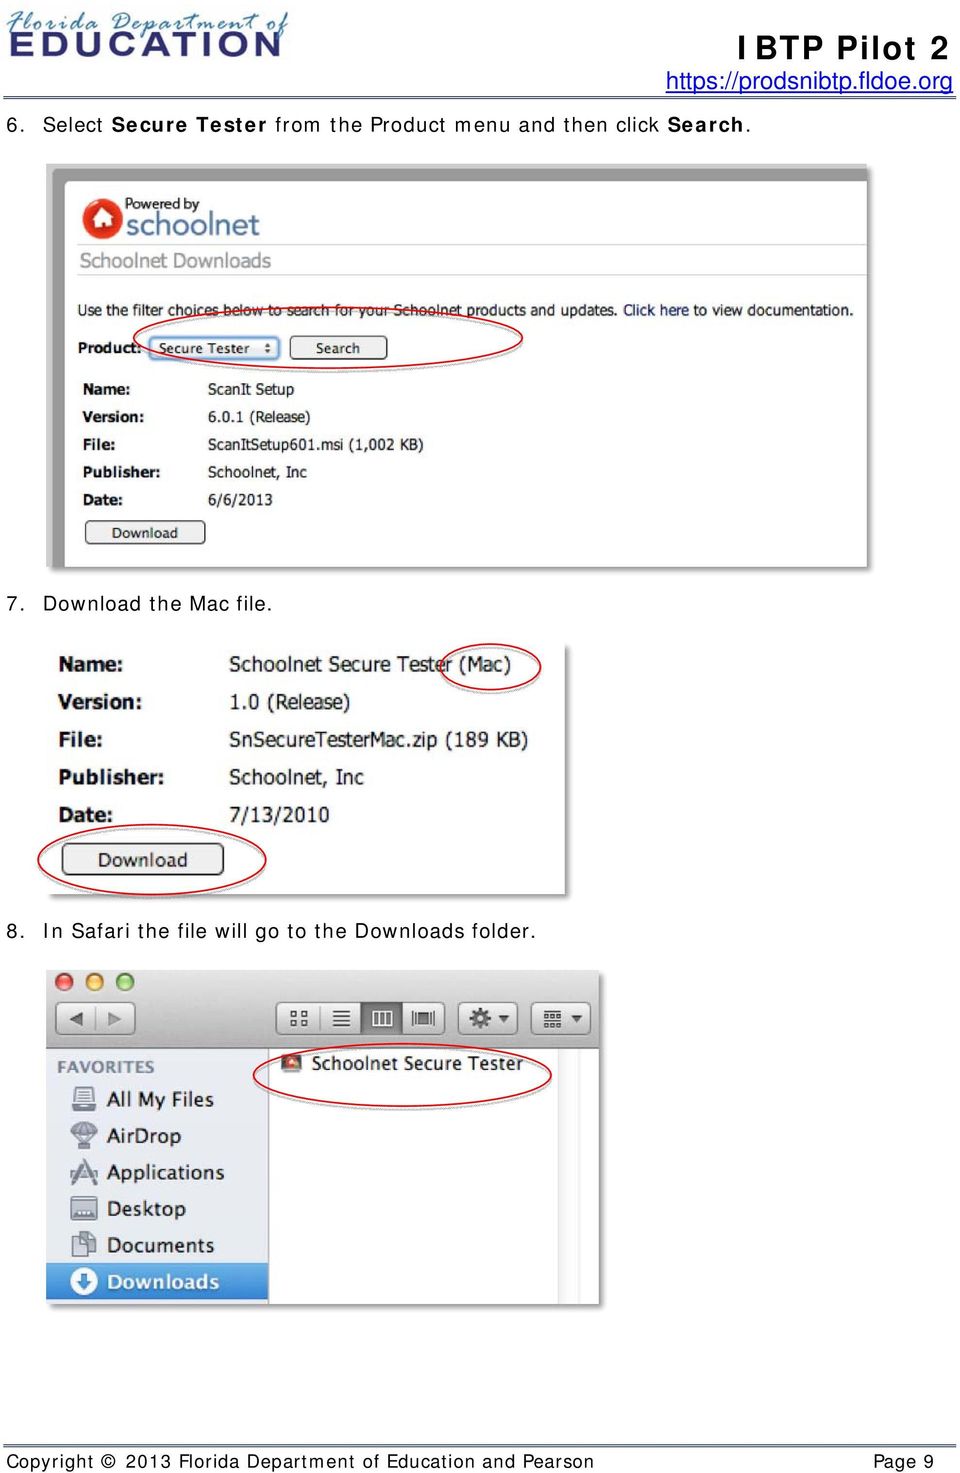 In Safari the file will go to the Downloads folder.